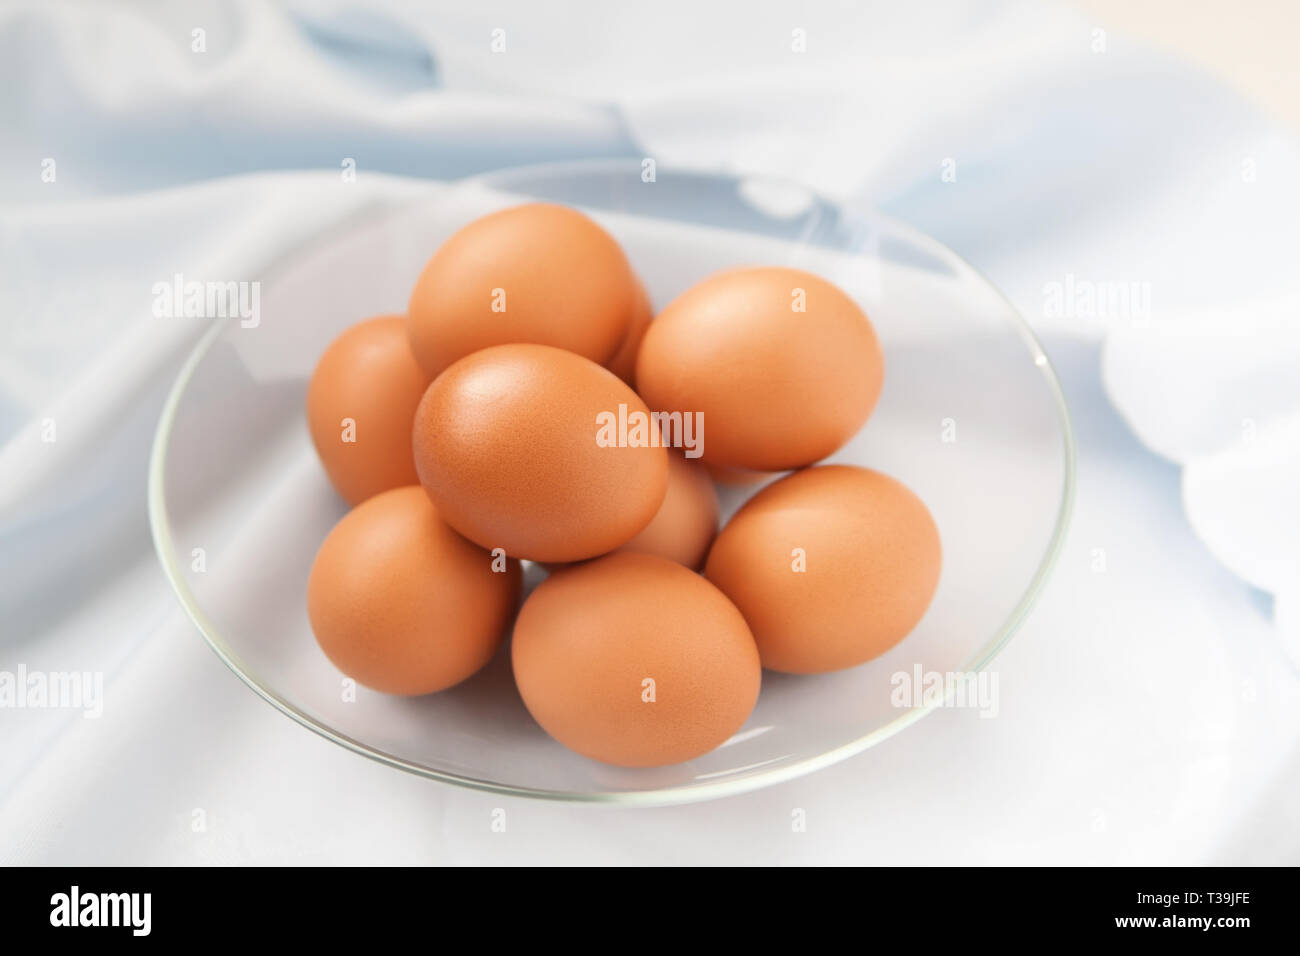 El plato de la gallina de los huevos de color marrón fresca sobre el mantel de lino azul Foto de stock